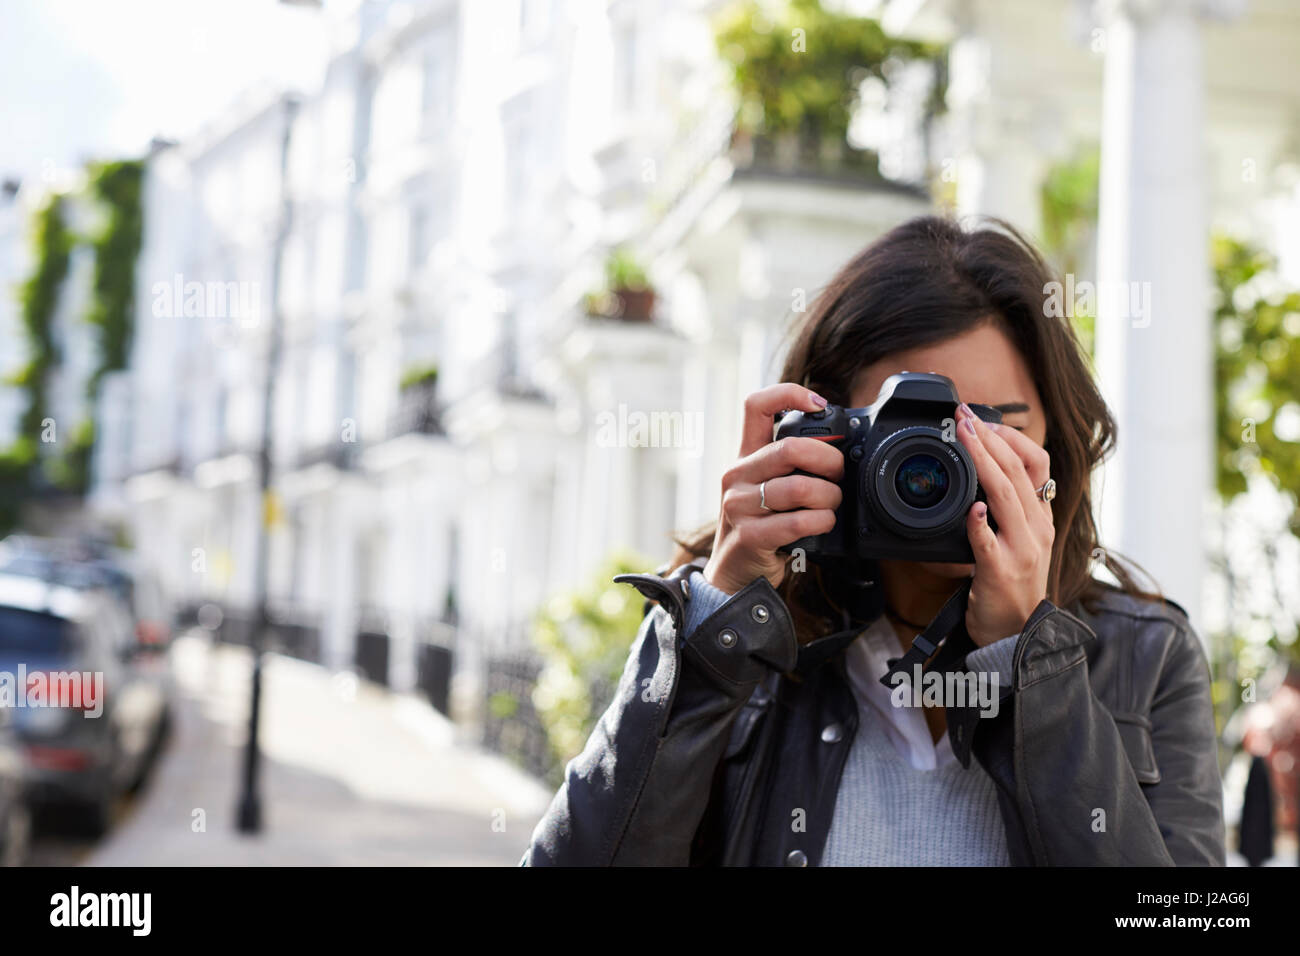 Giovane donna in strada prendendo foto con fotocamera reflex, close up Foto Stock